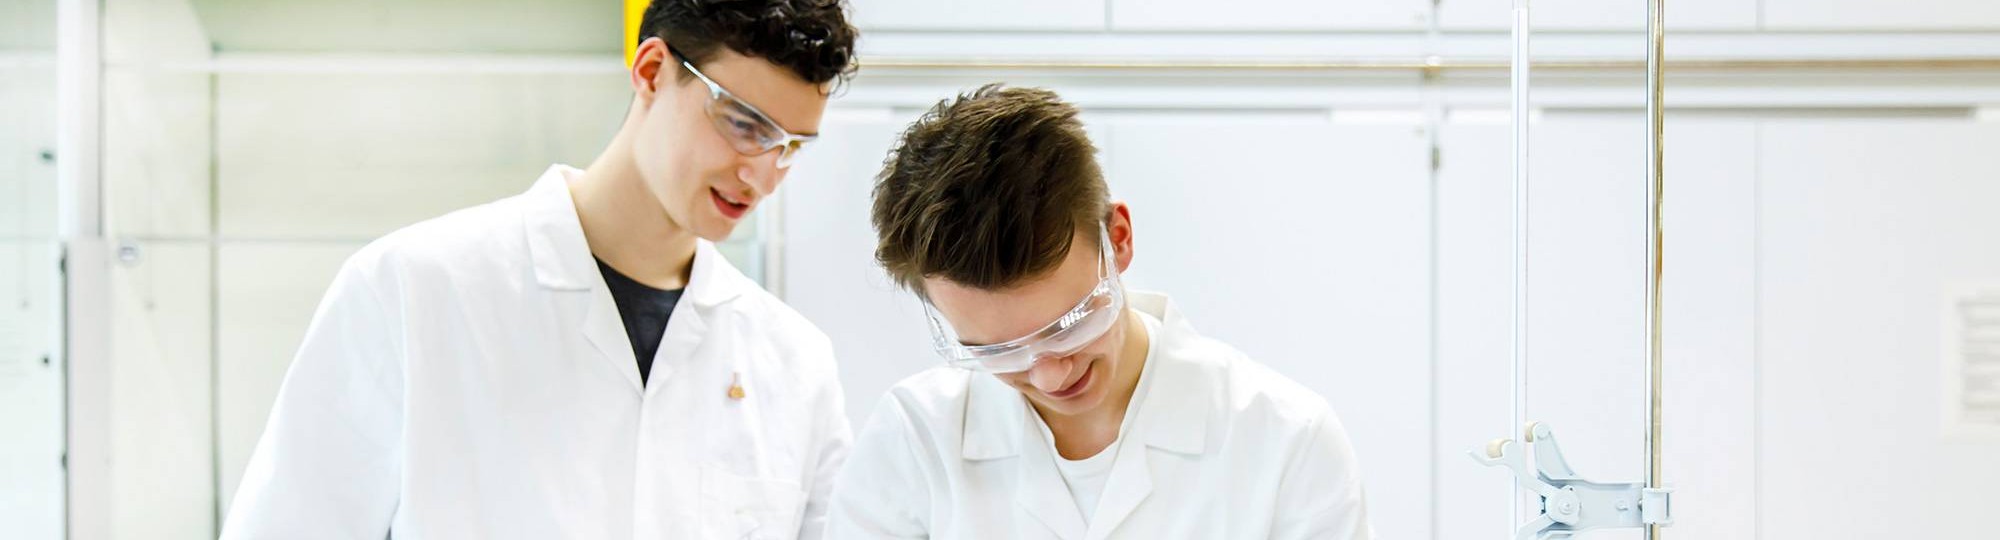 Twee studenten in labjassen controleren de uitkomst van hun experiment.